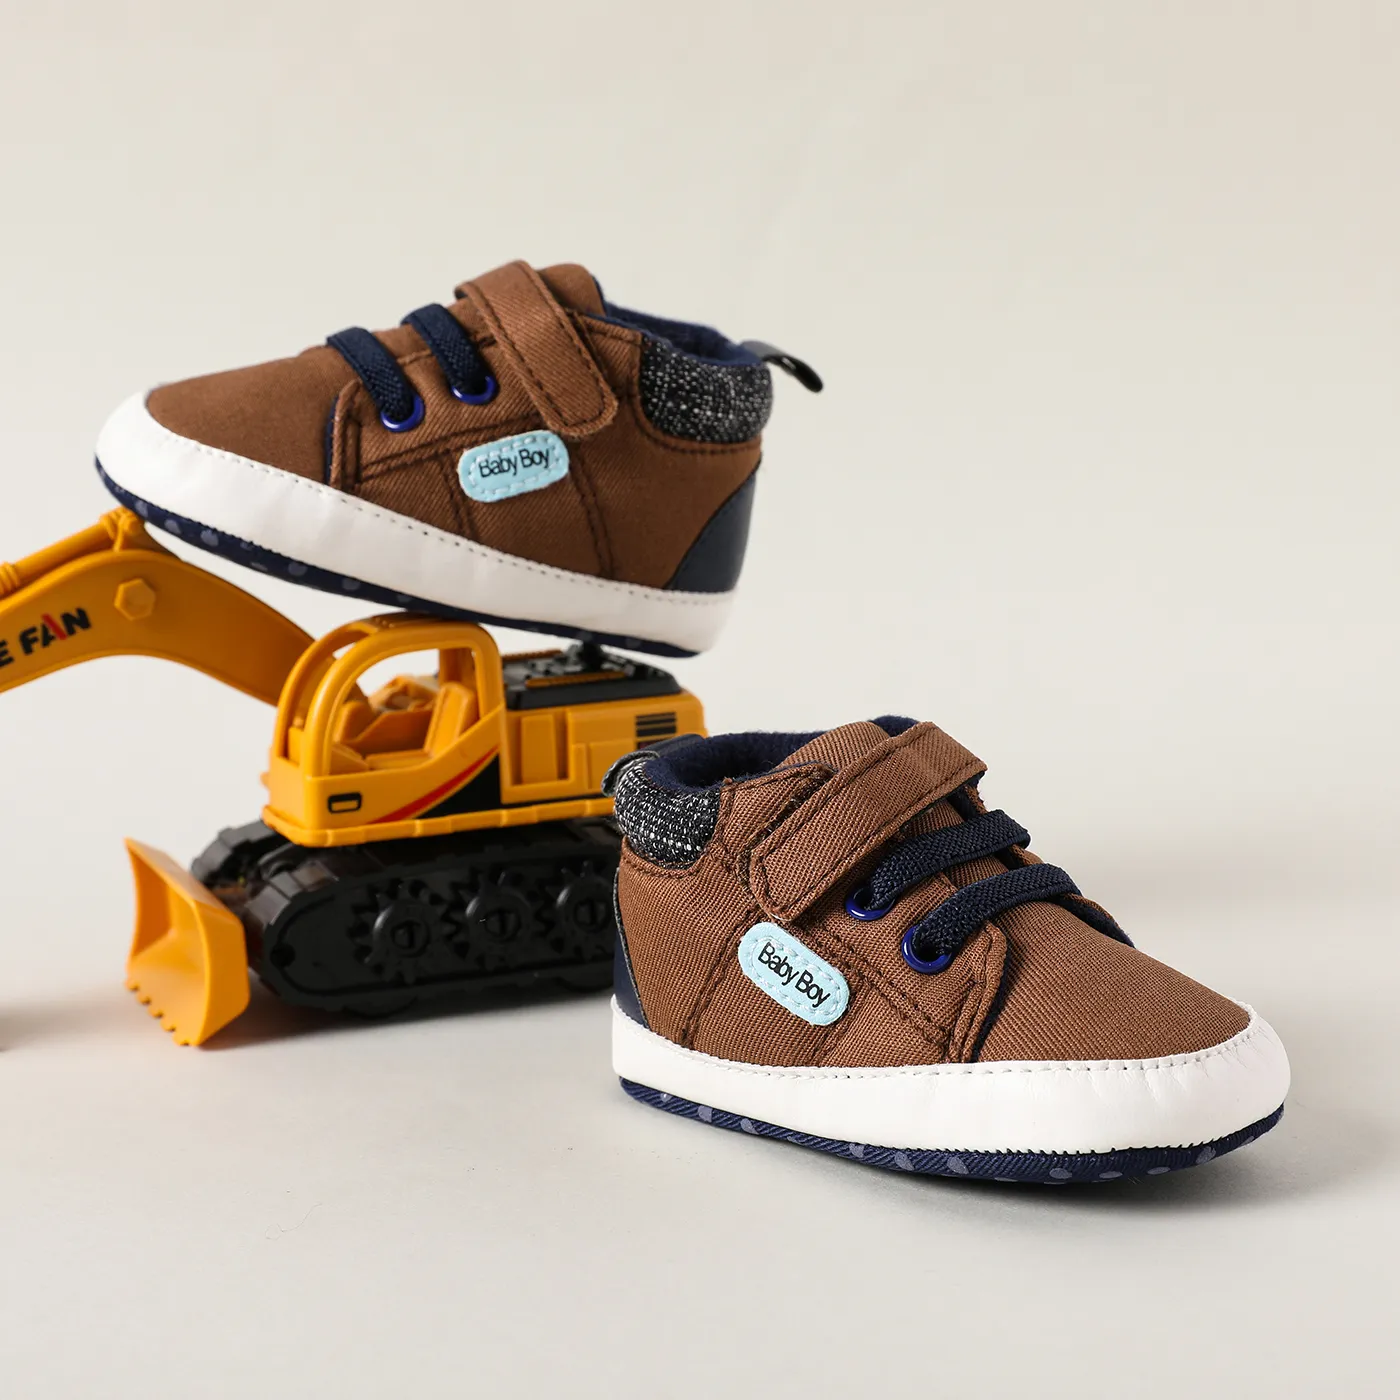 Toddler Boy Uniform Style Grid/Lapel 2pcs Set Or 1 Pair Of Shoes